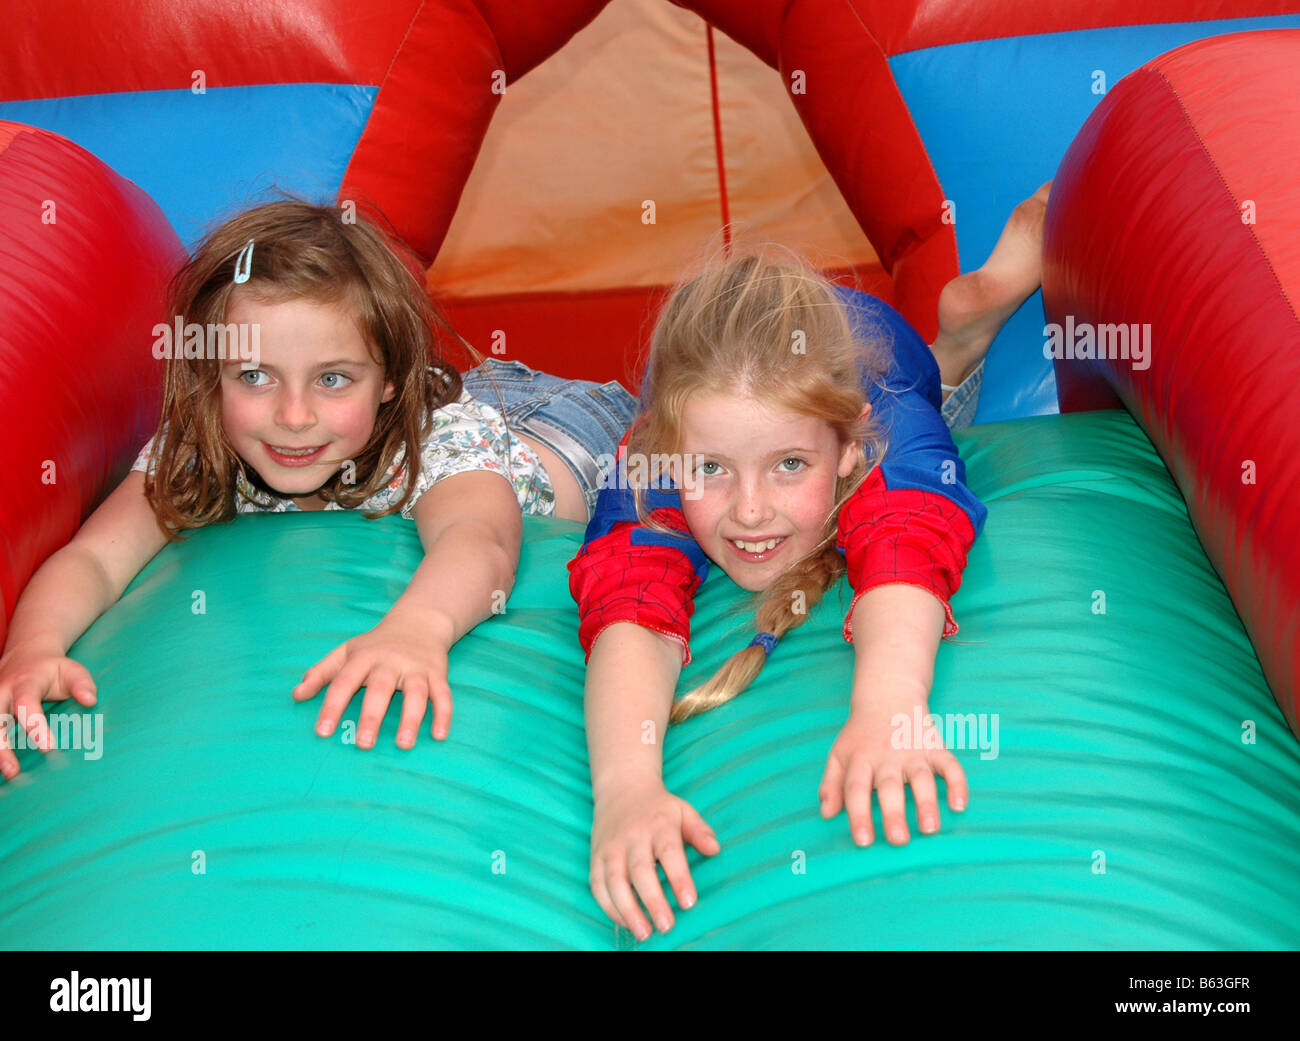 Deux jeunes filles jouer dans un château gonflable. Banque D'Images